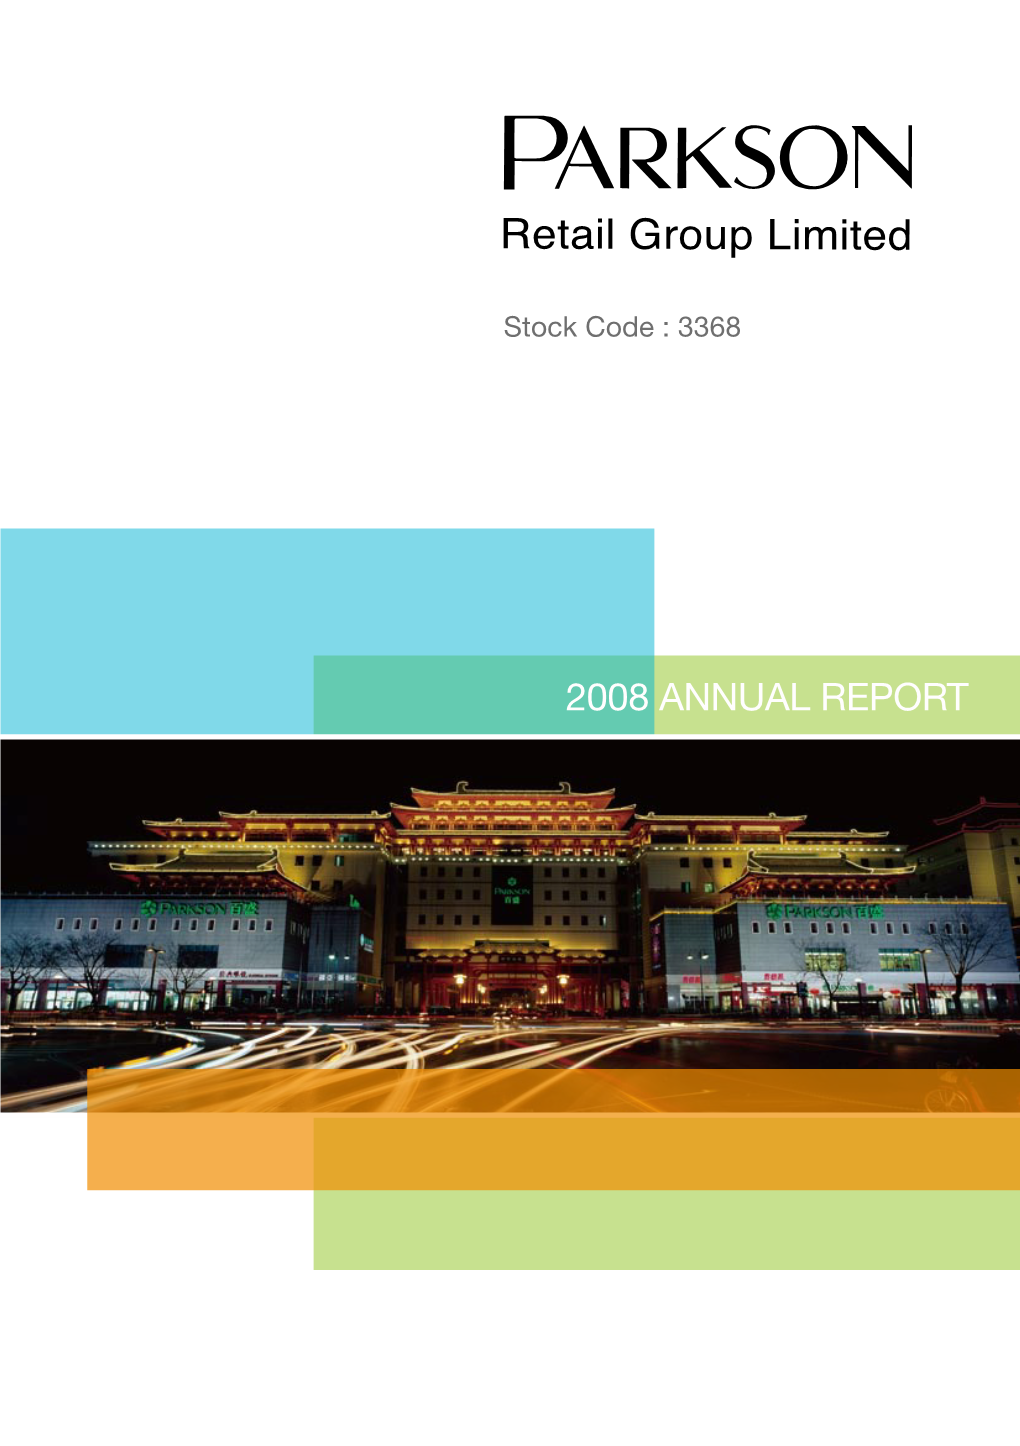 2008 Annual Report Corporate Profile